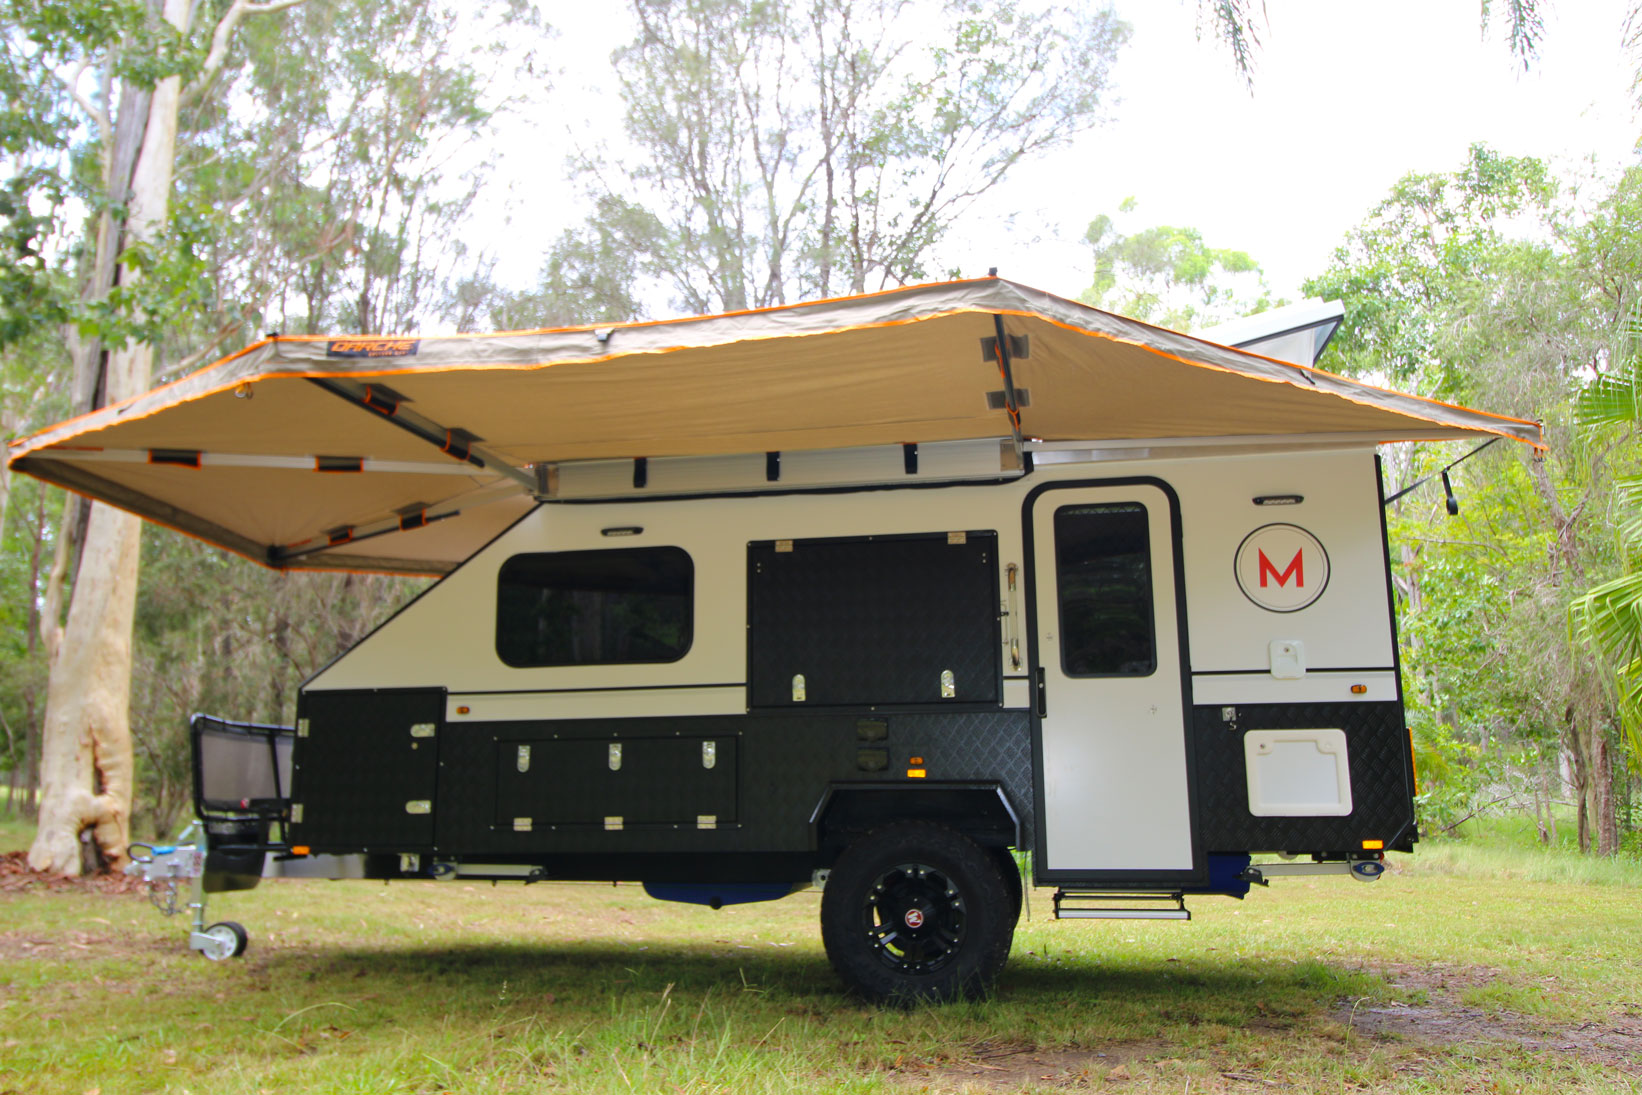 Modcon RV off road hybrid camper trailers C3P